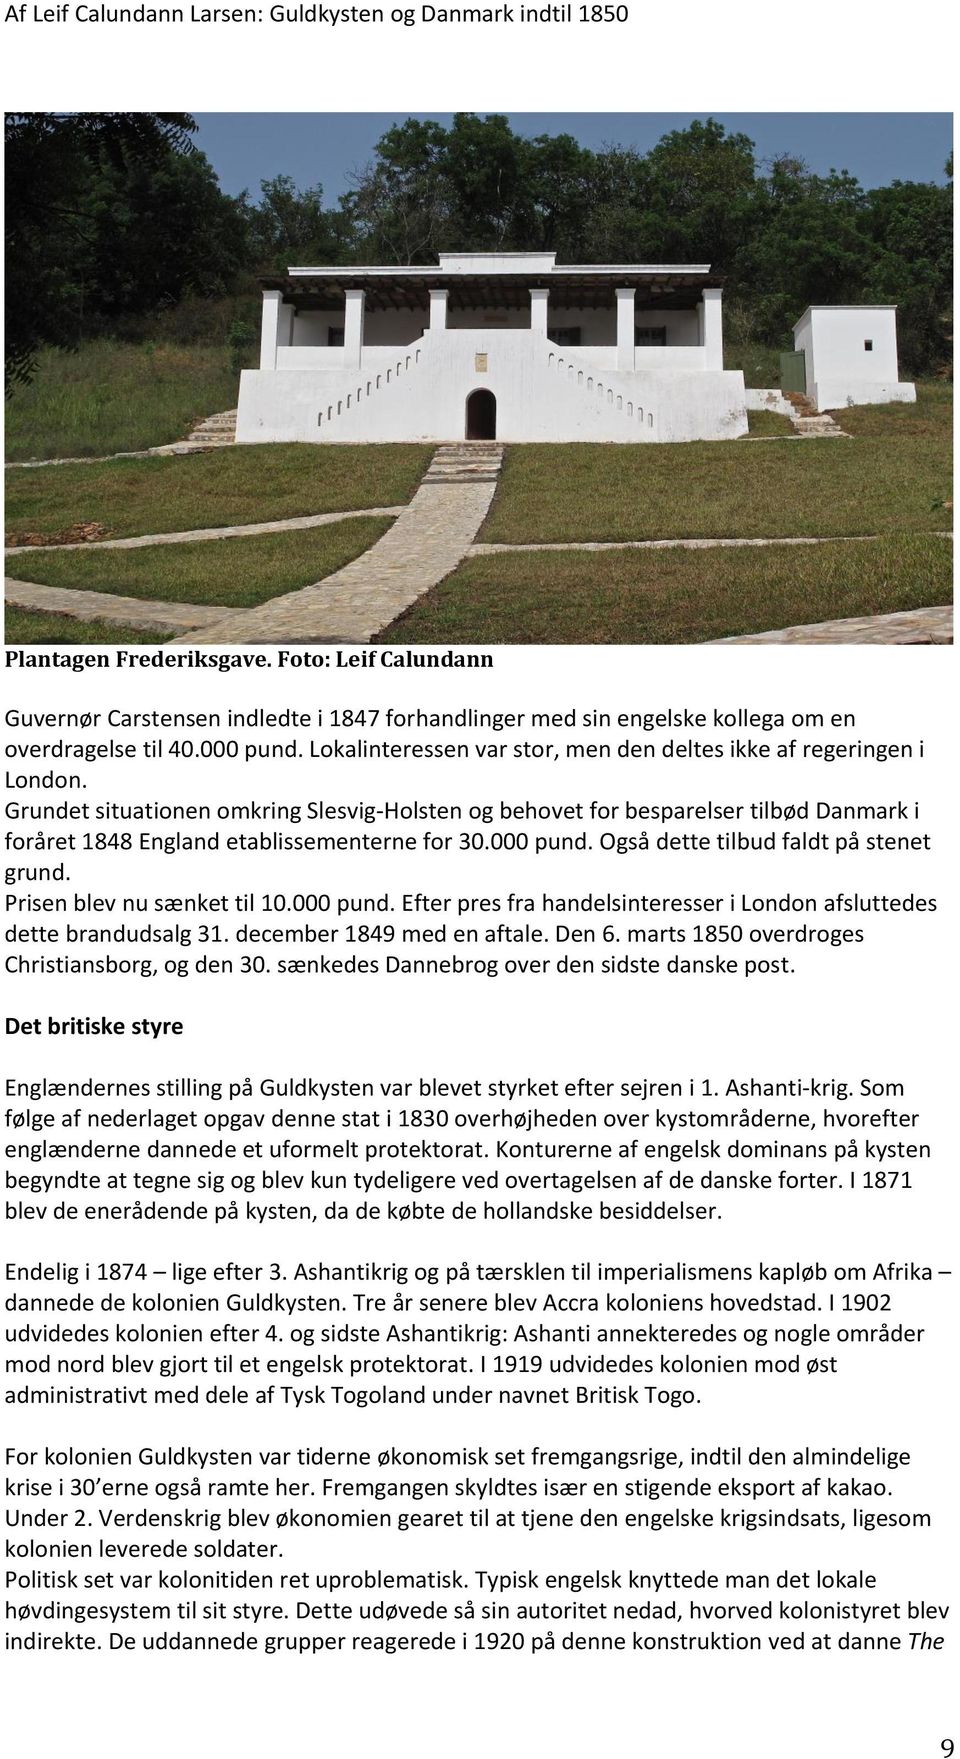 Grundet situationen omkring Slesvig-Holsten og behovet for besparelser tilbød Danmark i foråret 1848 England etablissementerne for 30.000 pund. Også dette tilbud faldt på stenet grund.